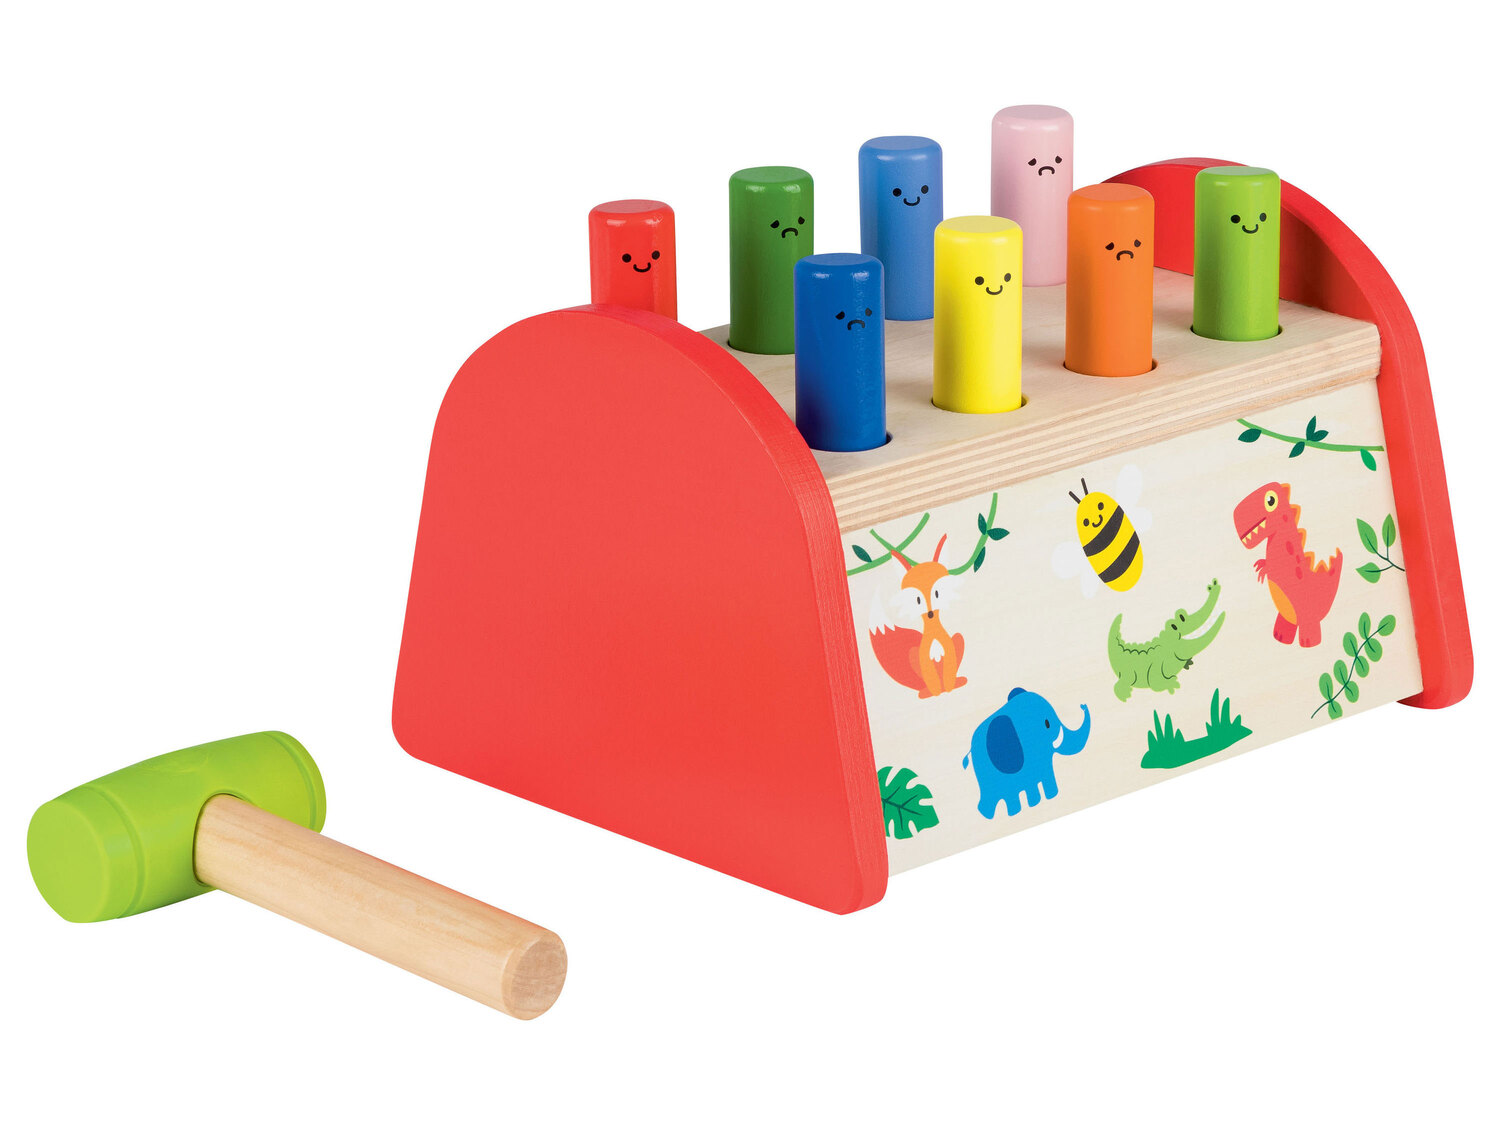 Drewniana zabawka edukacyjna Playtive, cena 39,99 PLN 
4 zestawy do wyboru 
- do ...